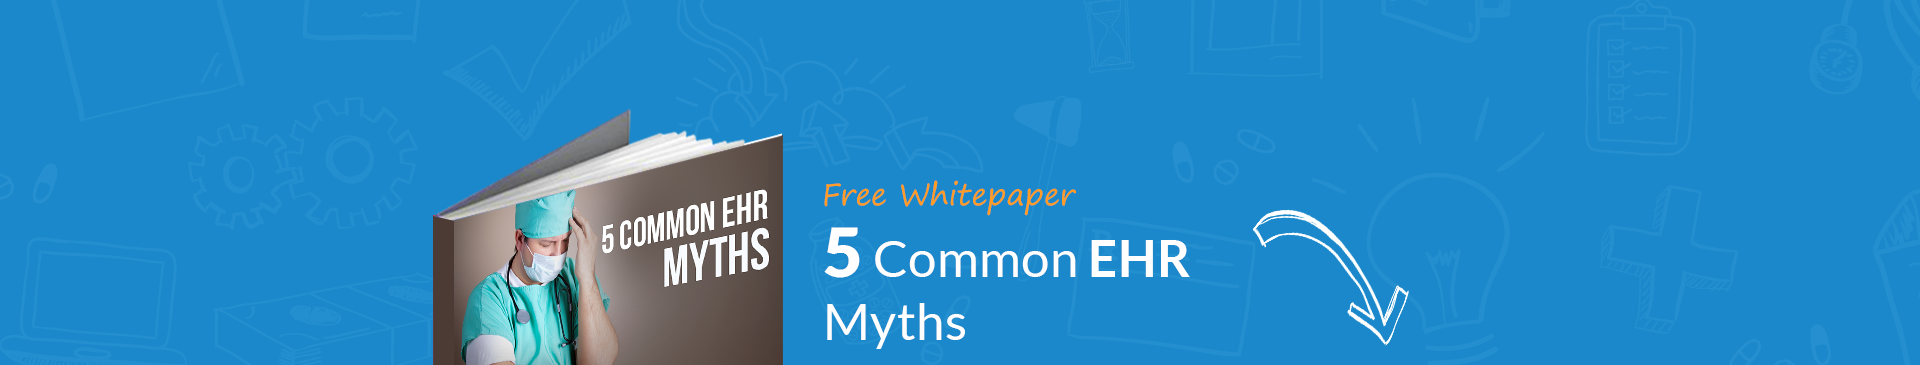 5 Common EHR Myths